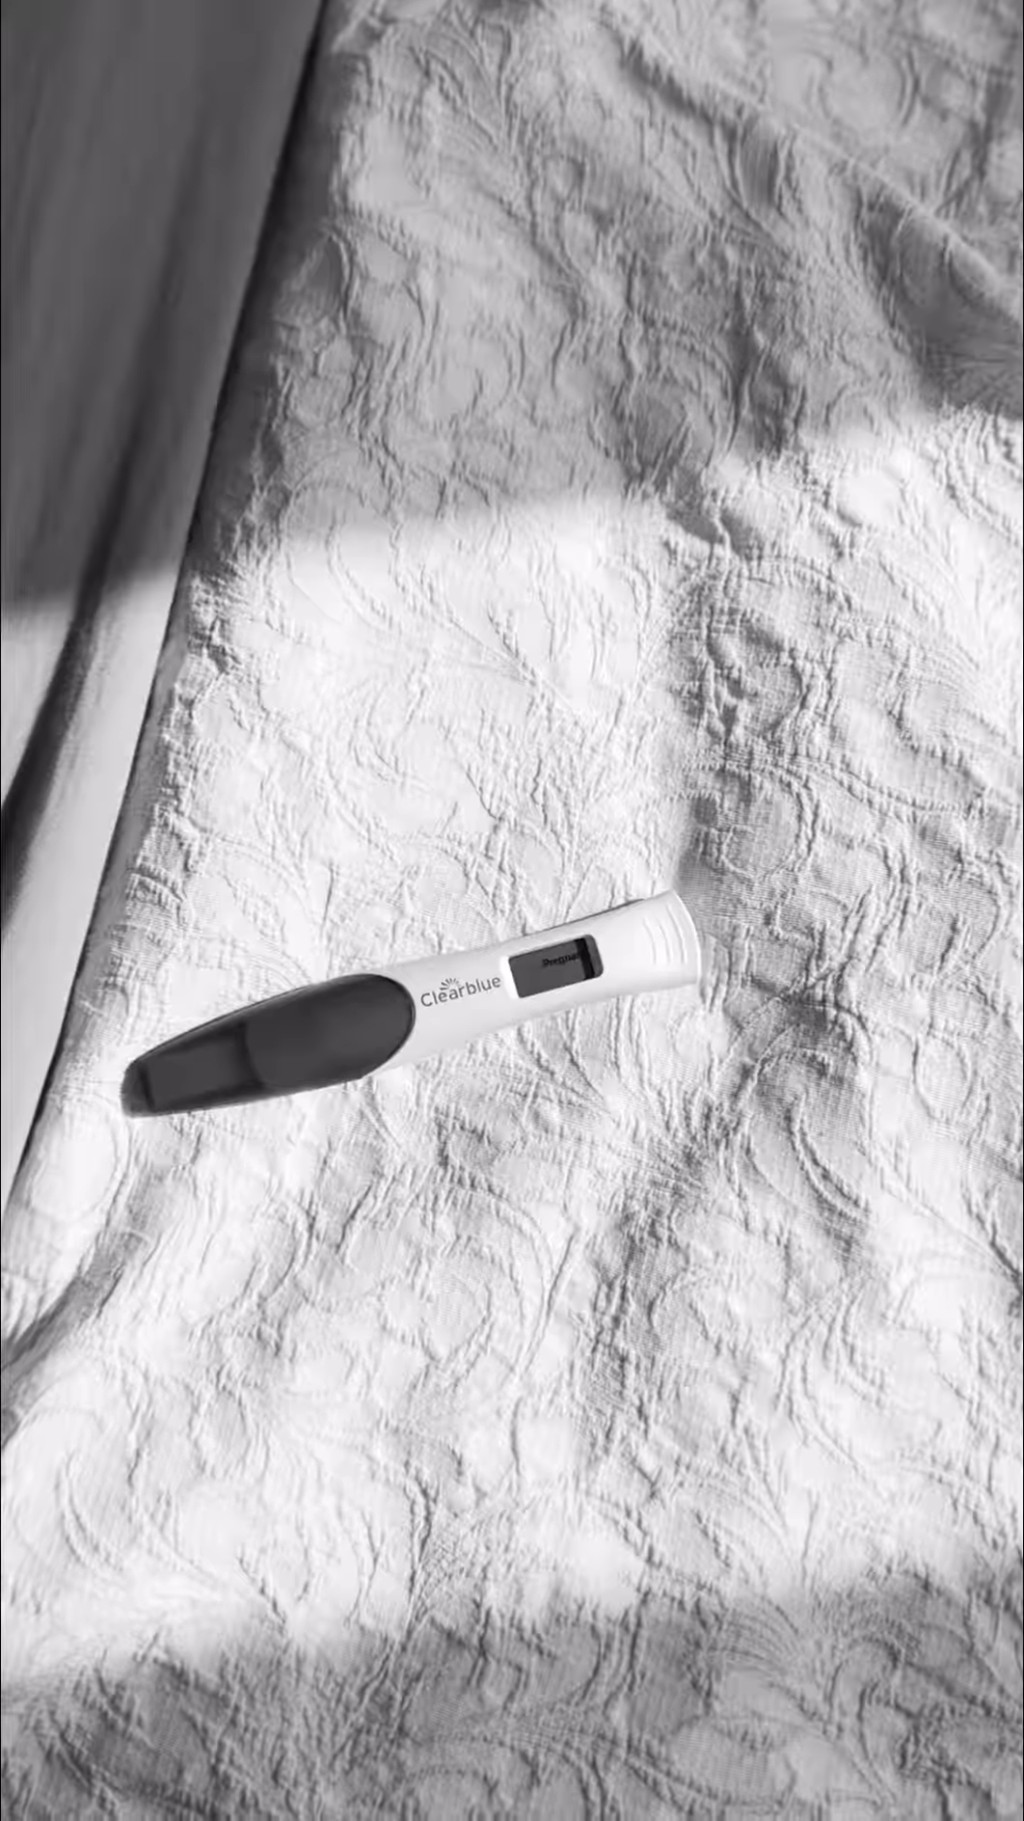 馮天蔓貼上一張黑白的驗孕棒相片。